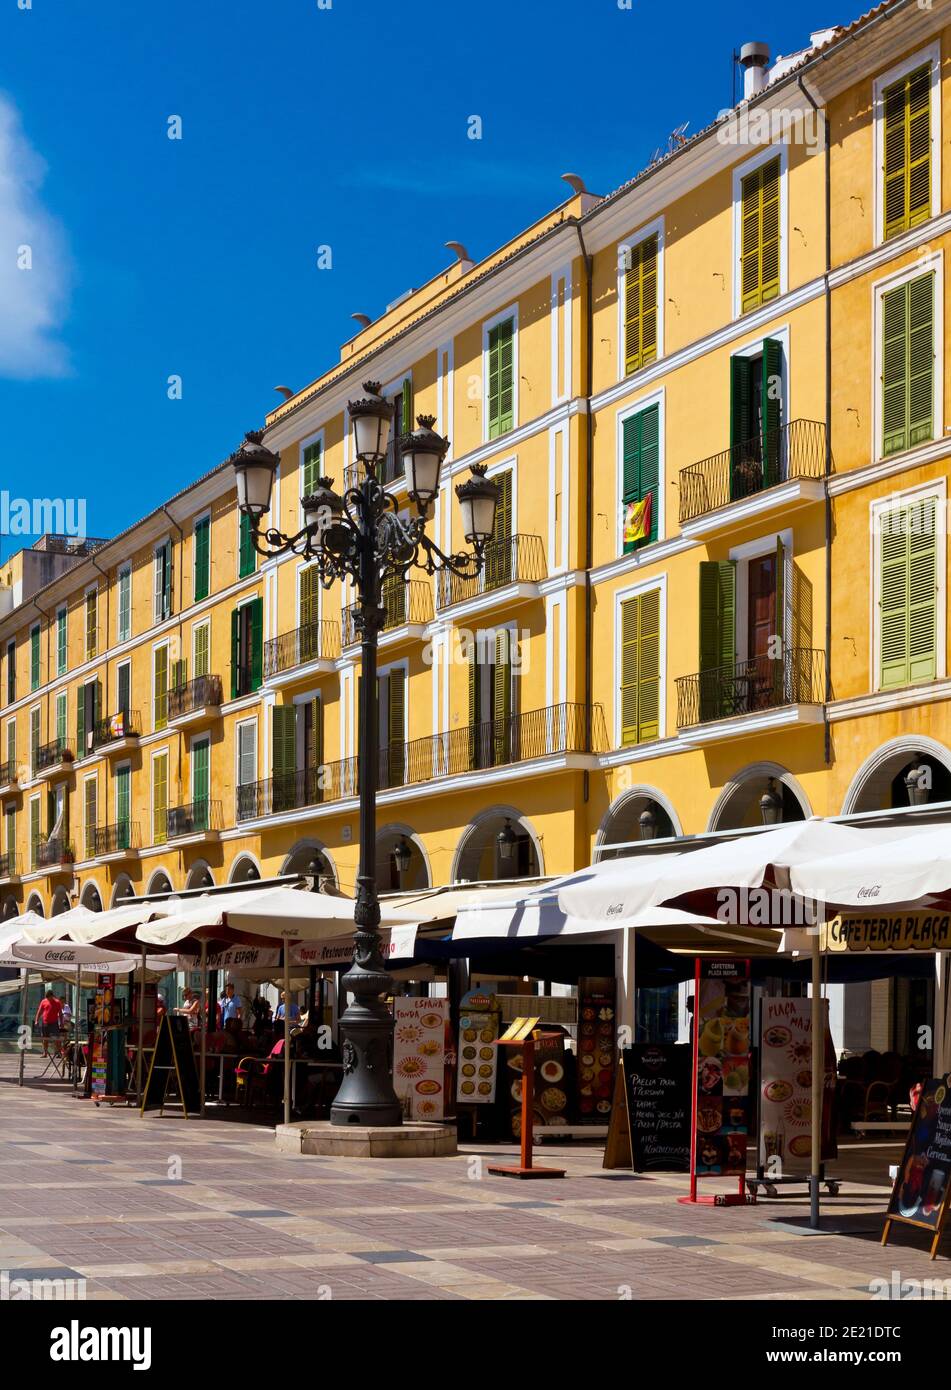 Edifici dai colori vivaci con balconi e finestre a porte chiuse a Placa La parte principale o l'area della Città Vecchia di Palma Mallorca Isole Baleari Spagna Foto Stock